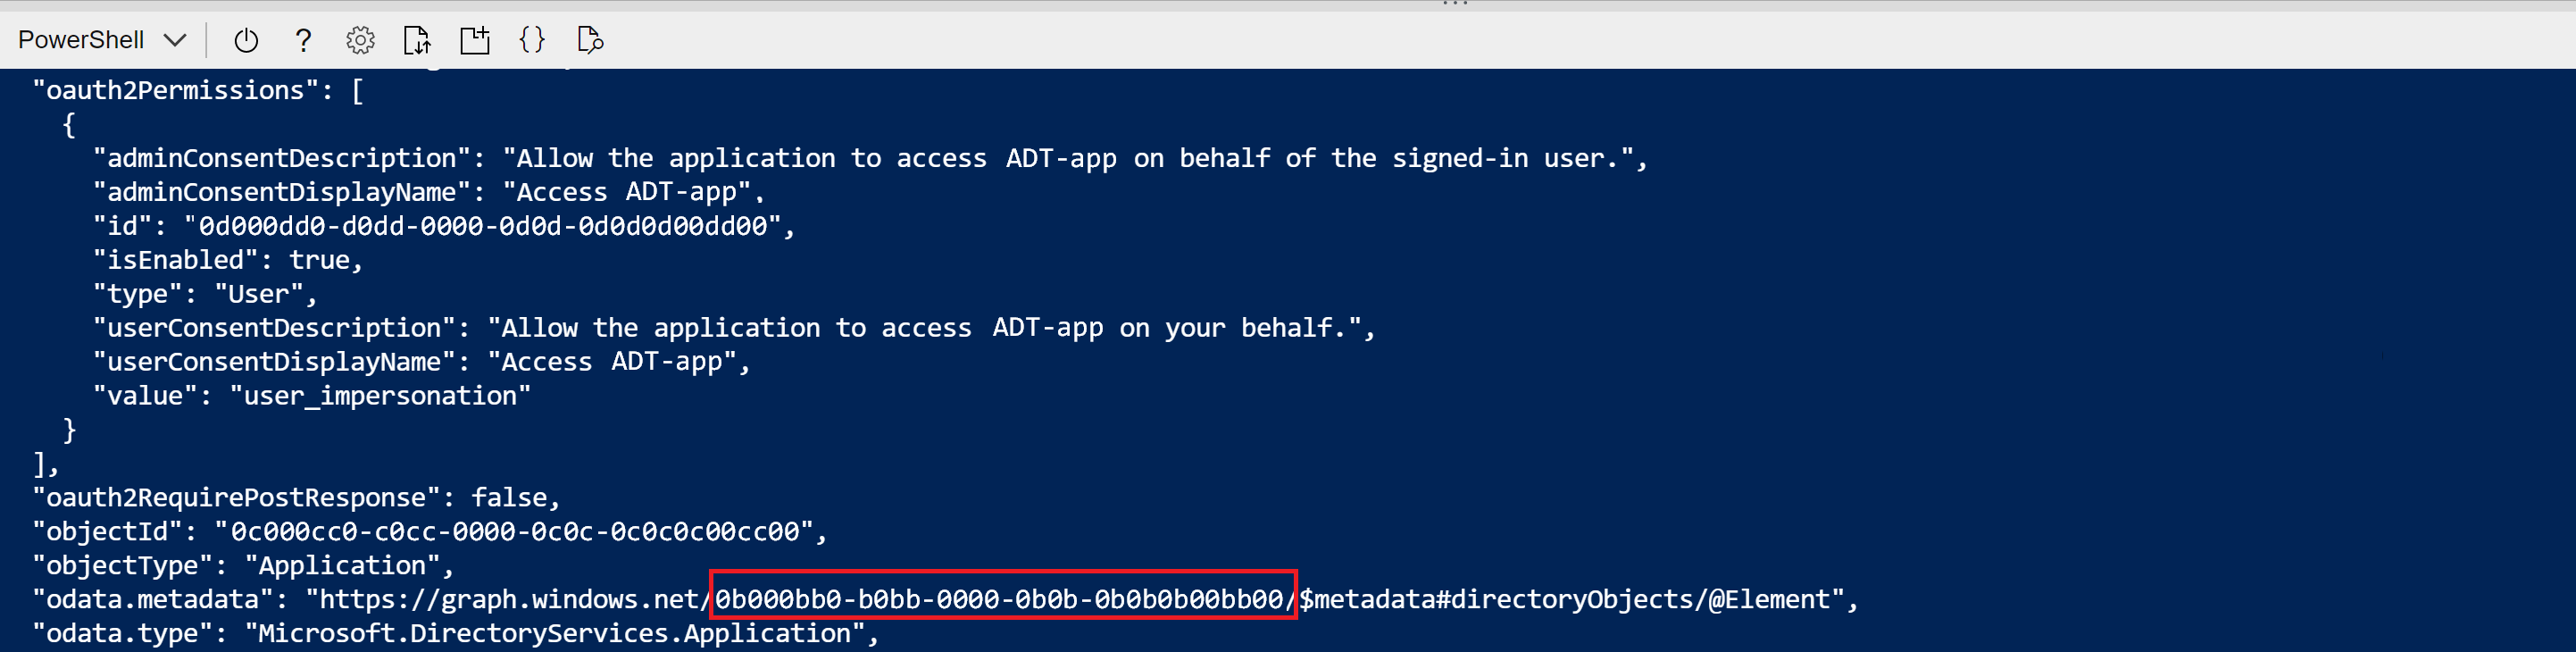 アプリの登録作成コマンドの Cloud Shell 出力を示すスクリーンショット。odata.metadata の GUID 値が強調表示されています。